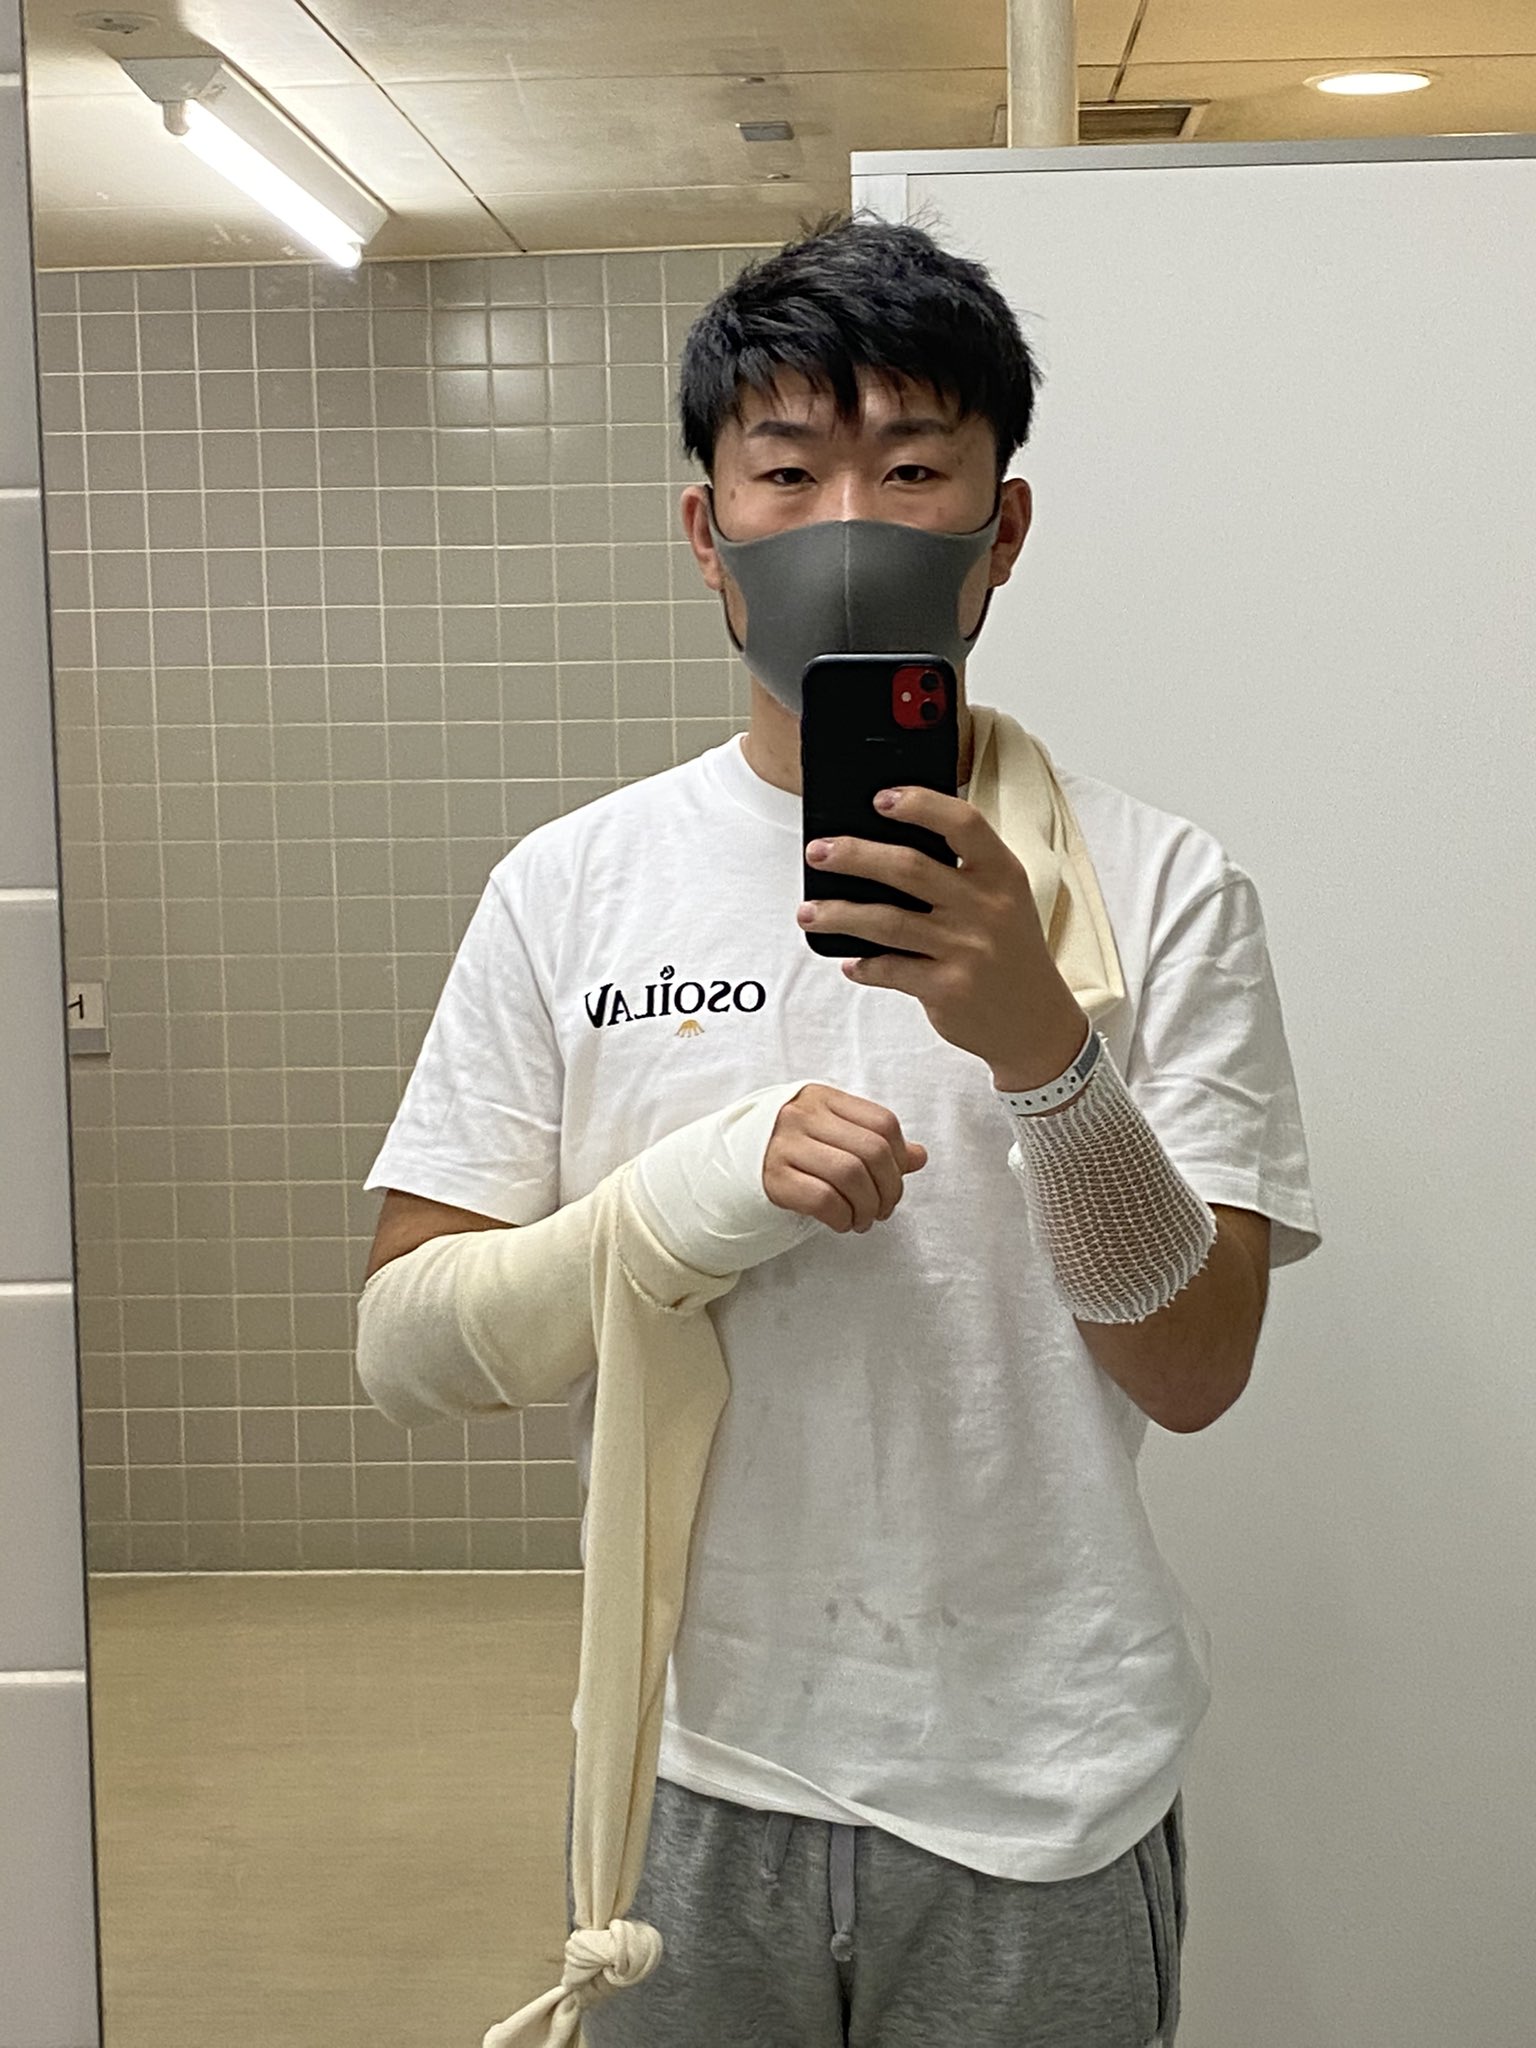 飯田 千馬 昨日手術終わりました 指先の痺れと痛みがありますが昨日よりは良くなってきています 全治6ヶ月と少し長いですが この期間に出来ることをしてパワーアップして戻れる様に頑張ります 舟状骨骨折 舟状骨偽関節 手術 フットサル ゴレイロ